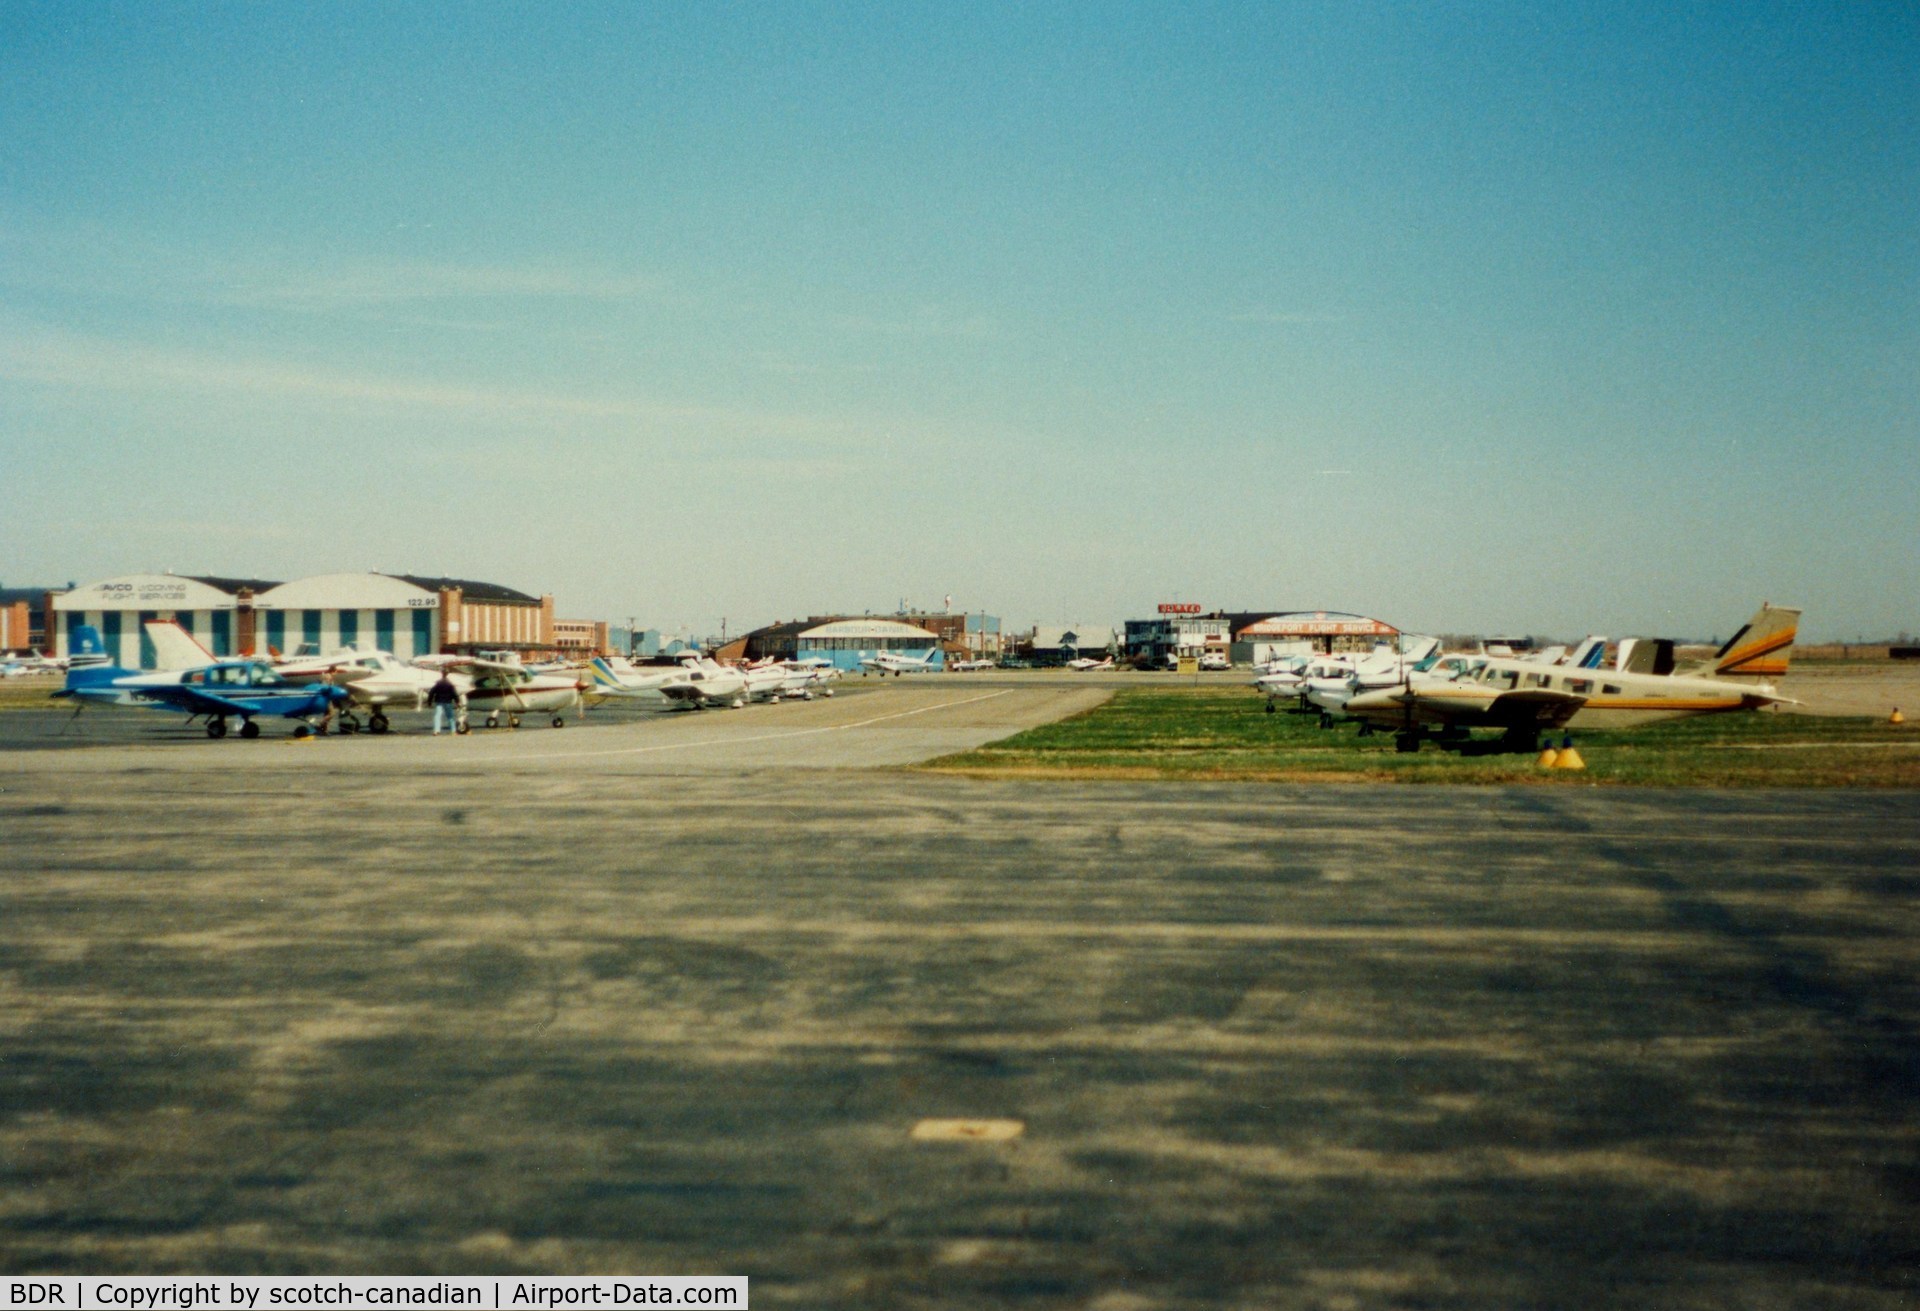 Igor I Sikorsky Memorial Airport (BDR) - Aircraft parked at Bridgeport Municipal Airport, Bridgeport, CT - circa 1980's